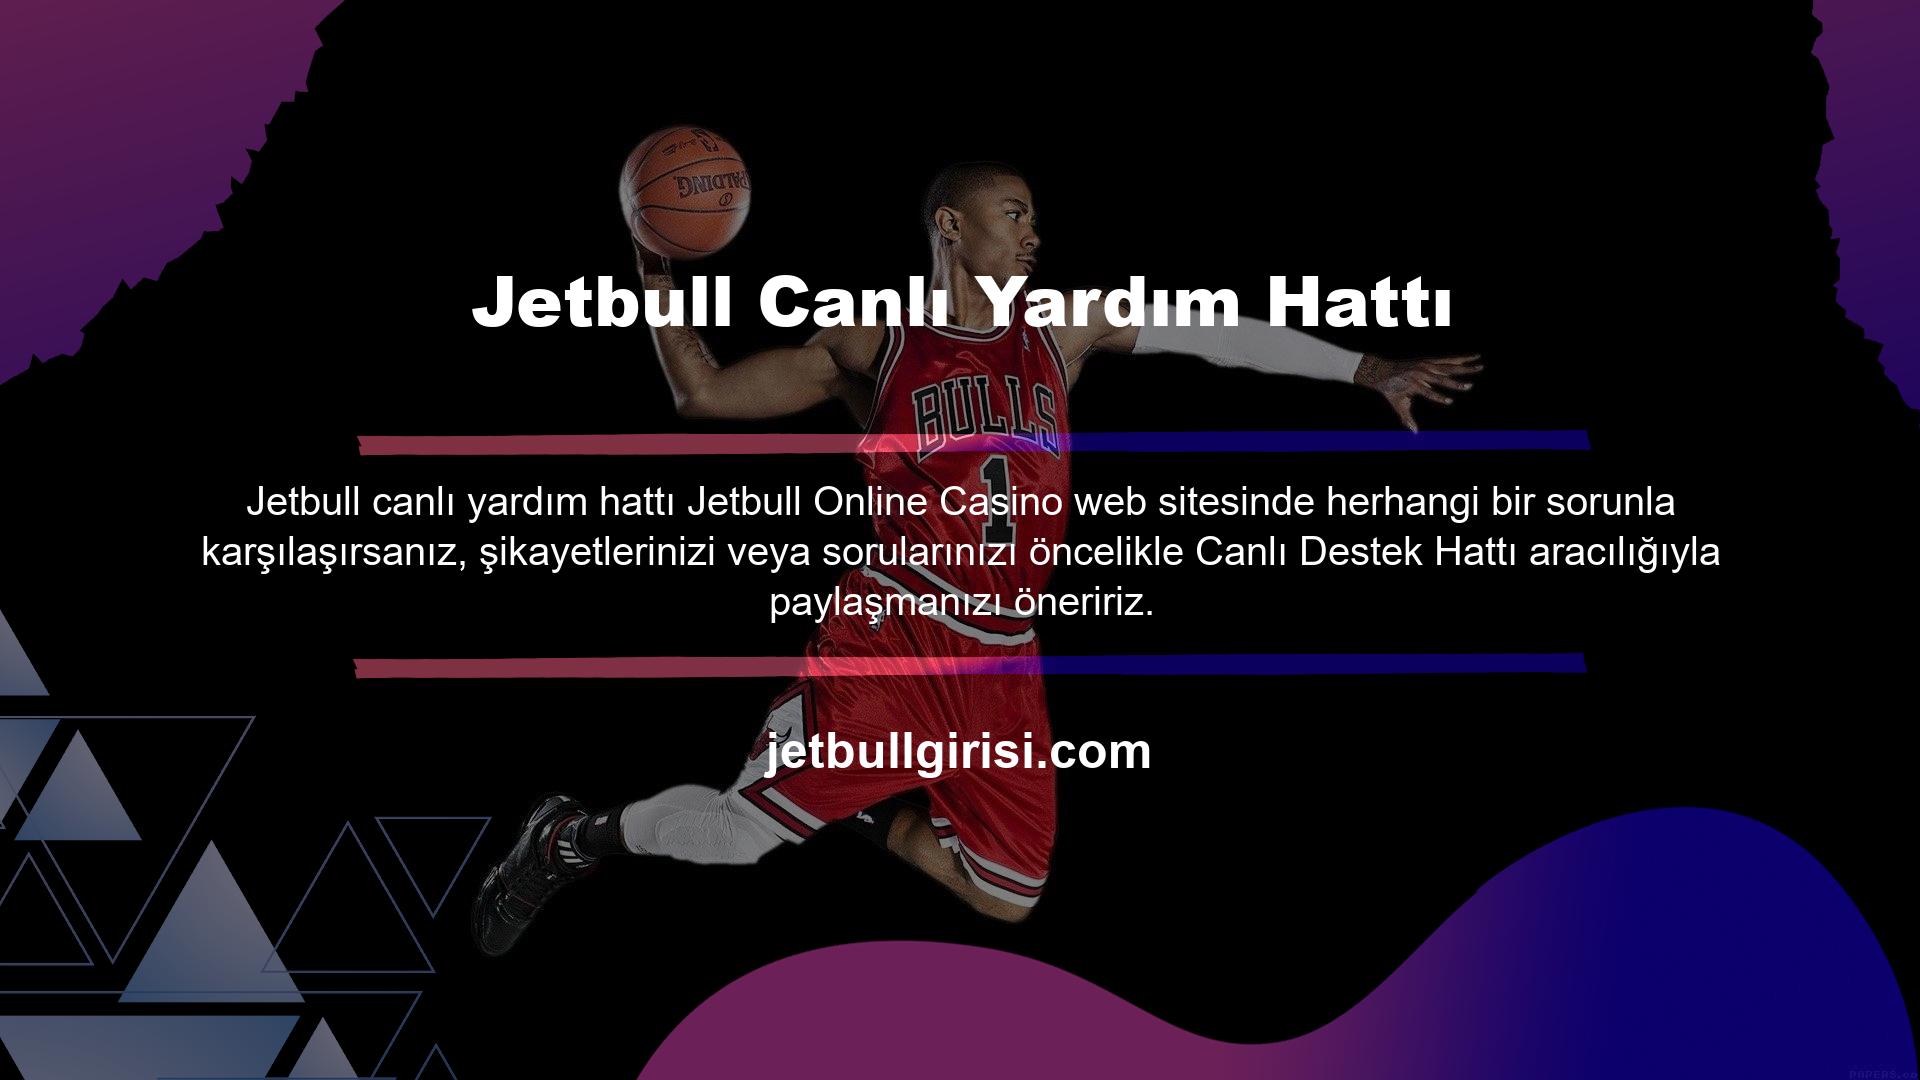 Jetbull online destek hattı, web sitesi üzerinden kullanıcılara 7/24 hizmet vermektedir